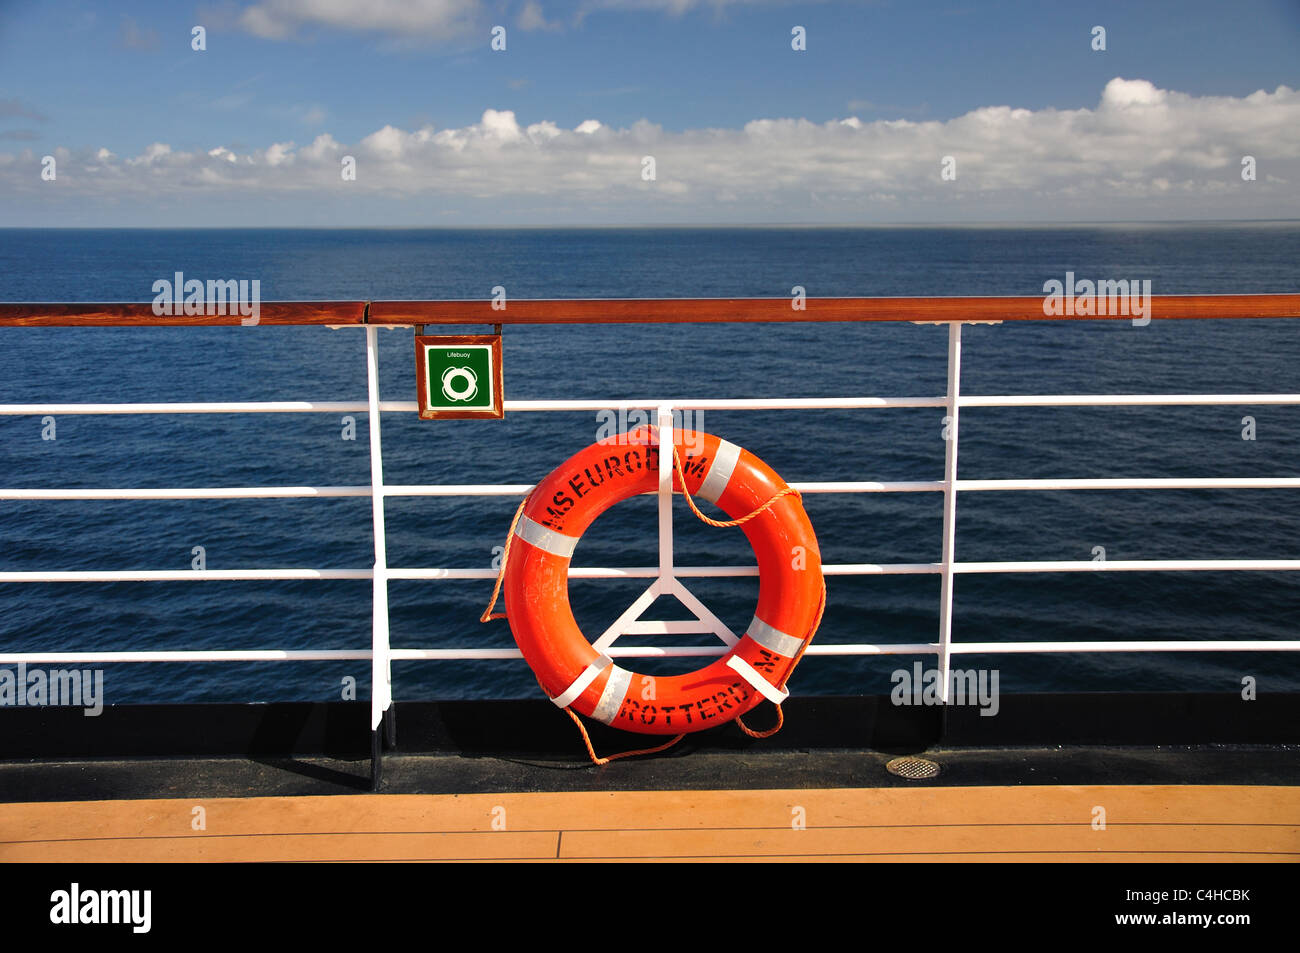 Garde-corps et bouée de sauvetage sur le pont, MS Eurodam Cruise Ship, Mer du Nord, Europe Banque D'Images